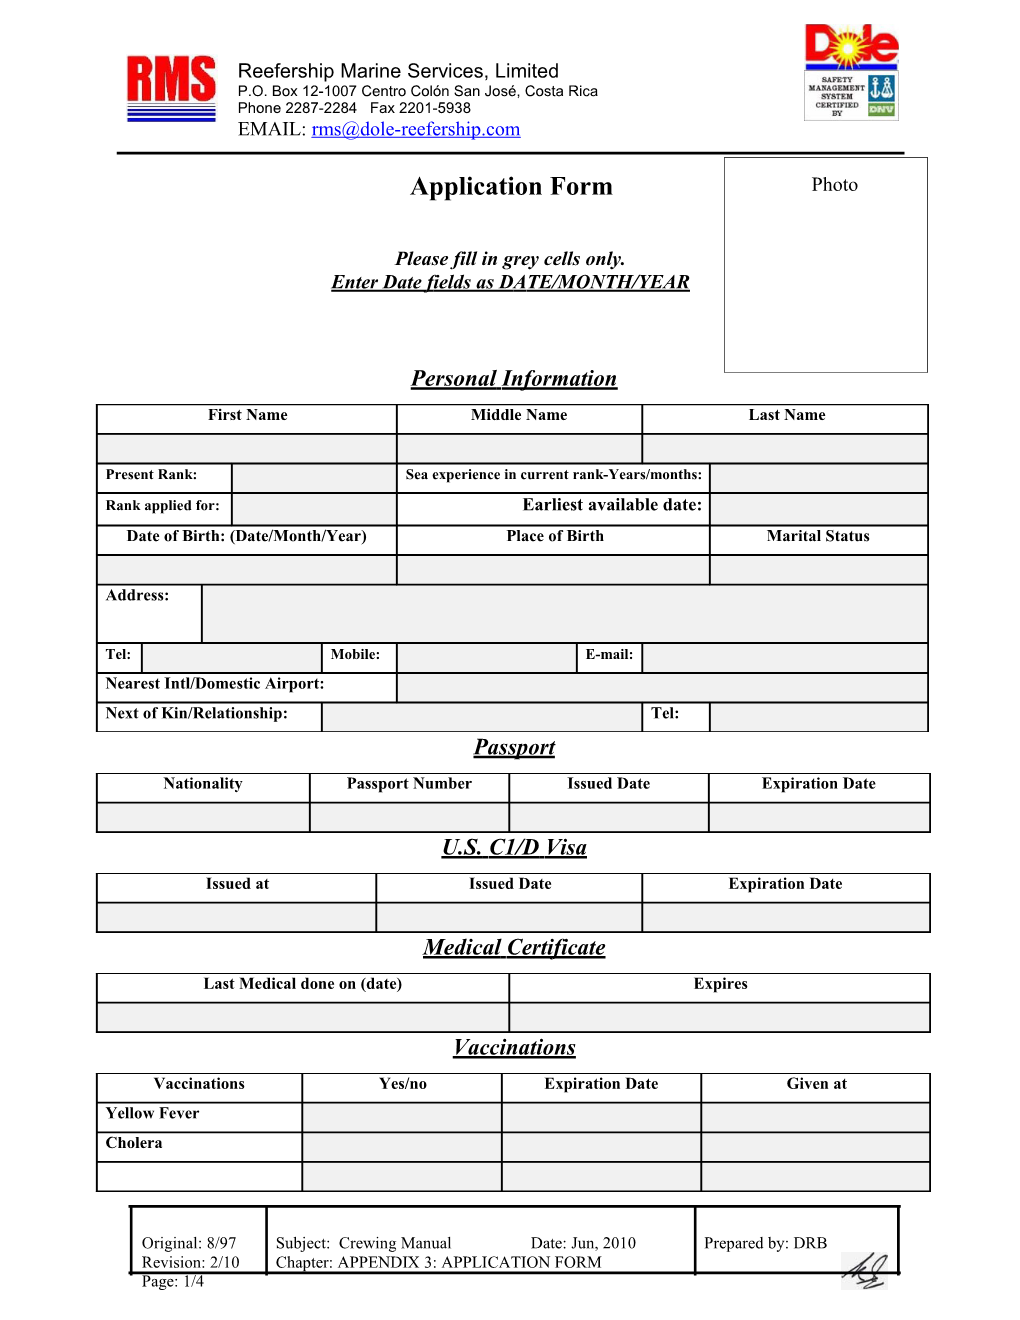 Appendix 3: Application Form